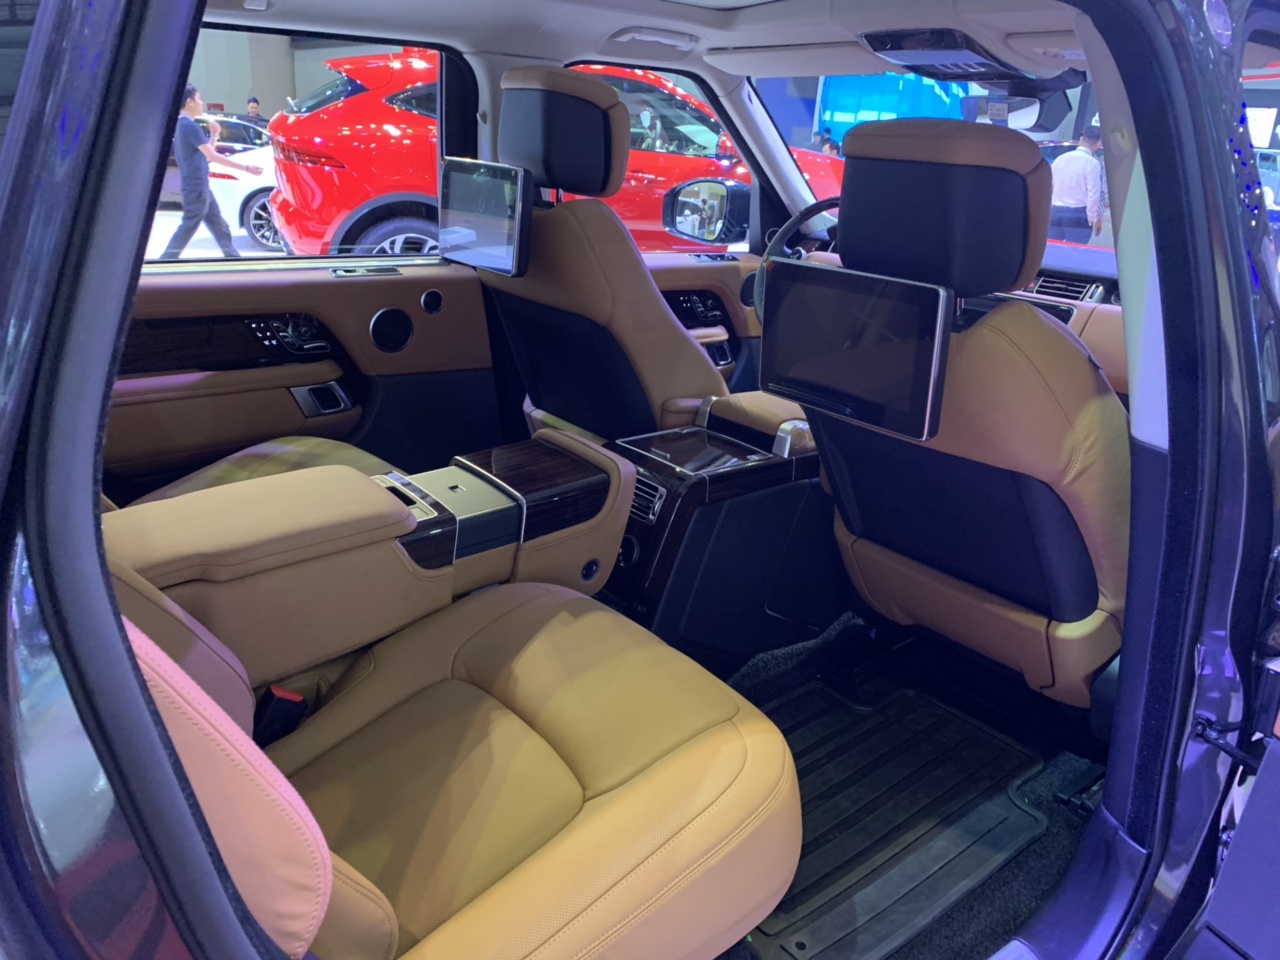 Giá Xe Range Rover Đời Mới 2019 Phiên Bản HSE Và Autobiography LWB bao nhiêu Tiền tại Việt Nam nhập khẩu chính hãng, xe giao ngay vào thời điểm nào, có những phiên bản và động cơ loại mấy chấm, xe màu xám đẹp nhât